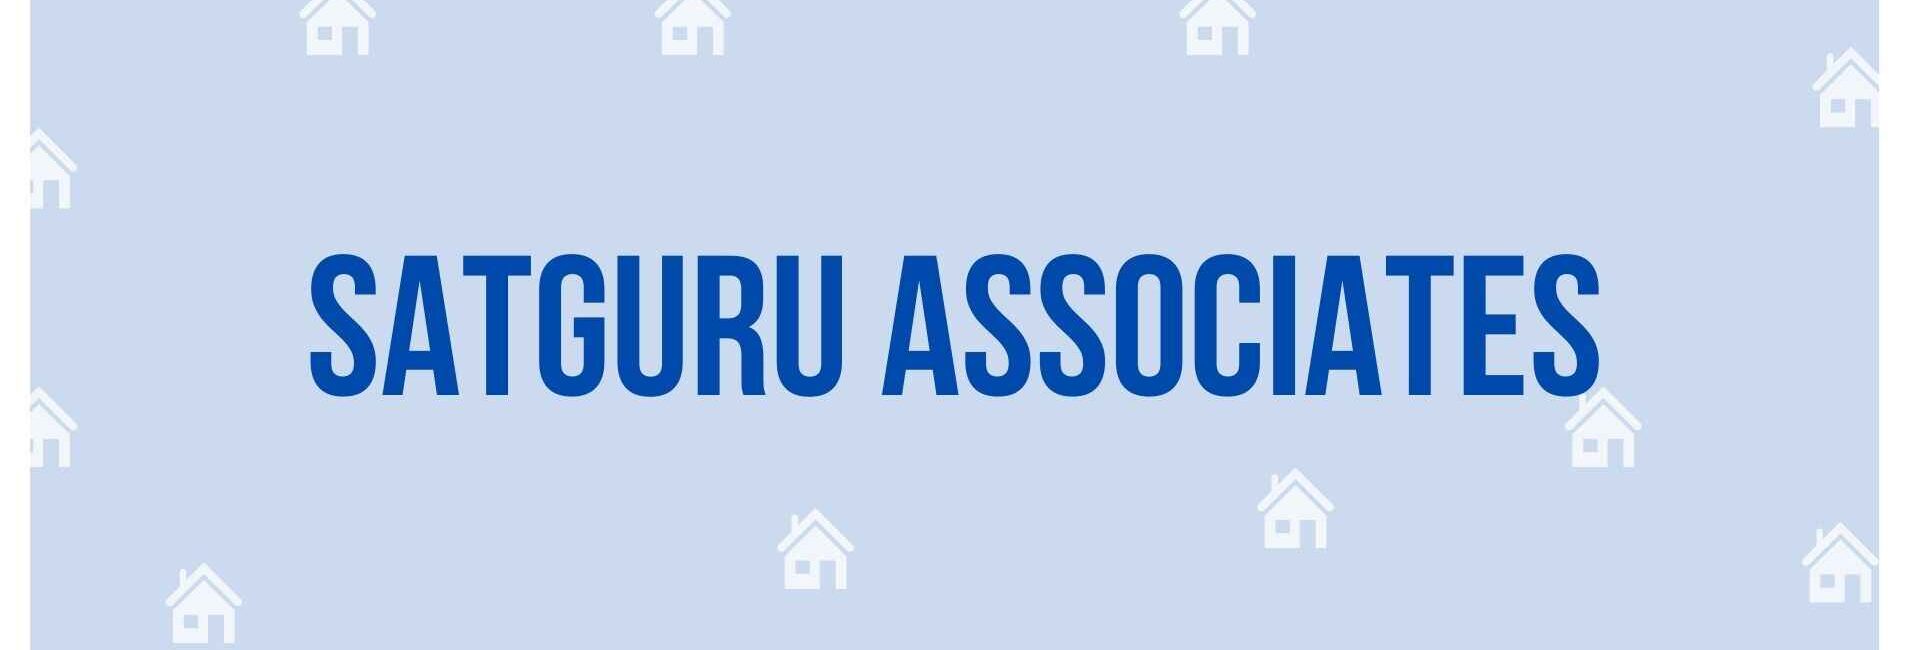 Satguru Associates - Property Dealer in Noida